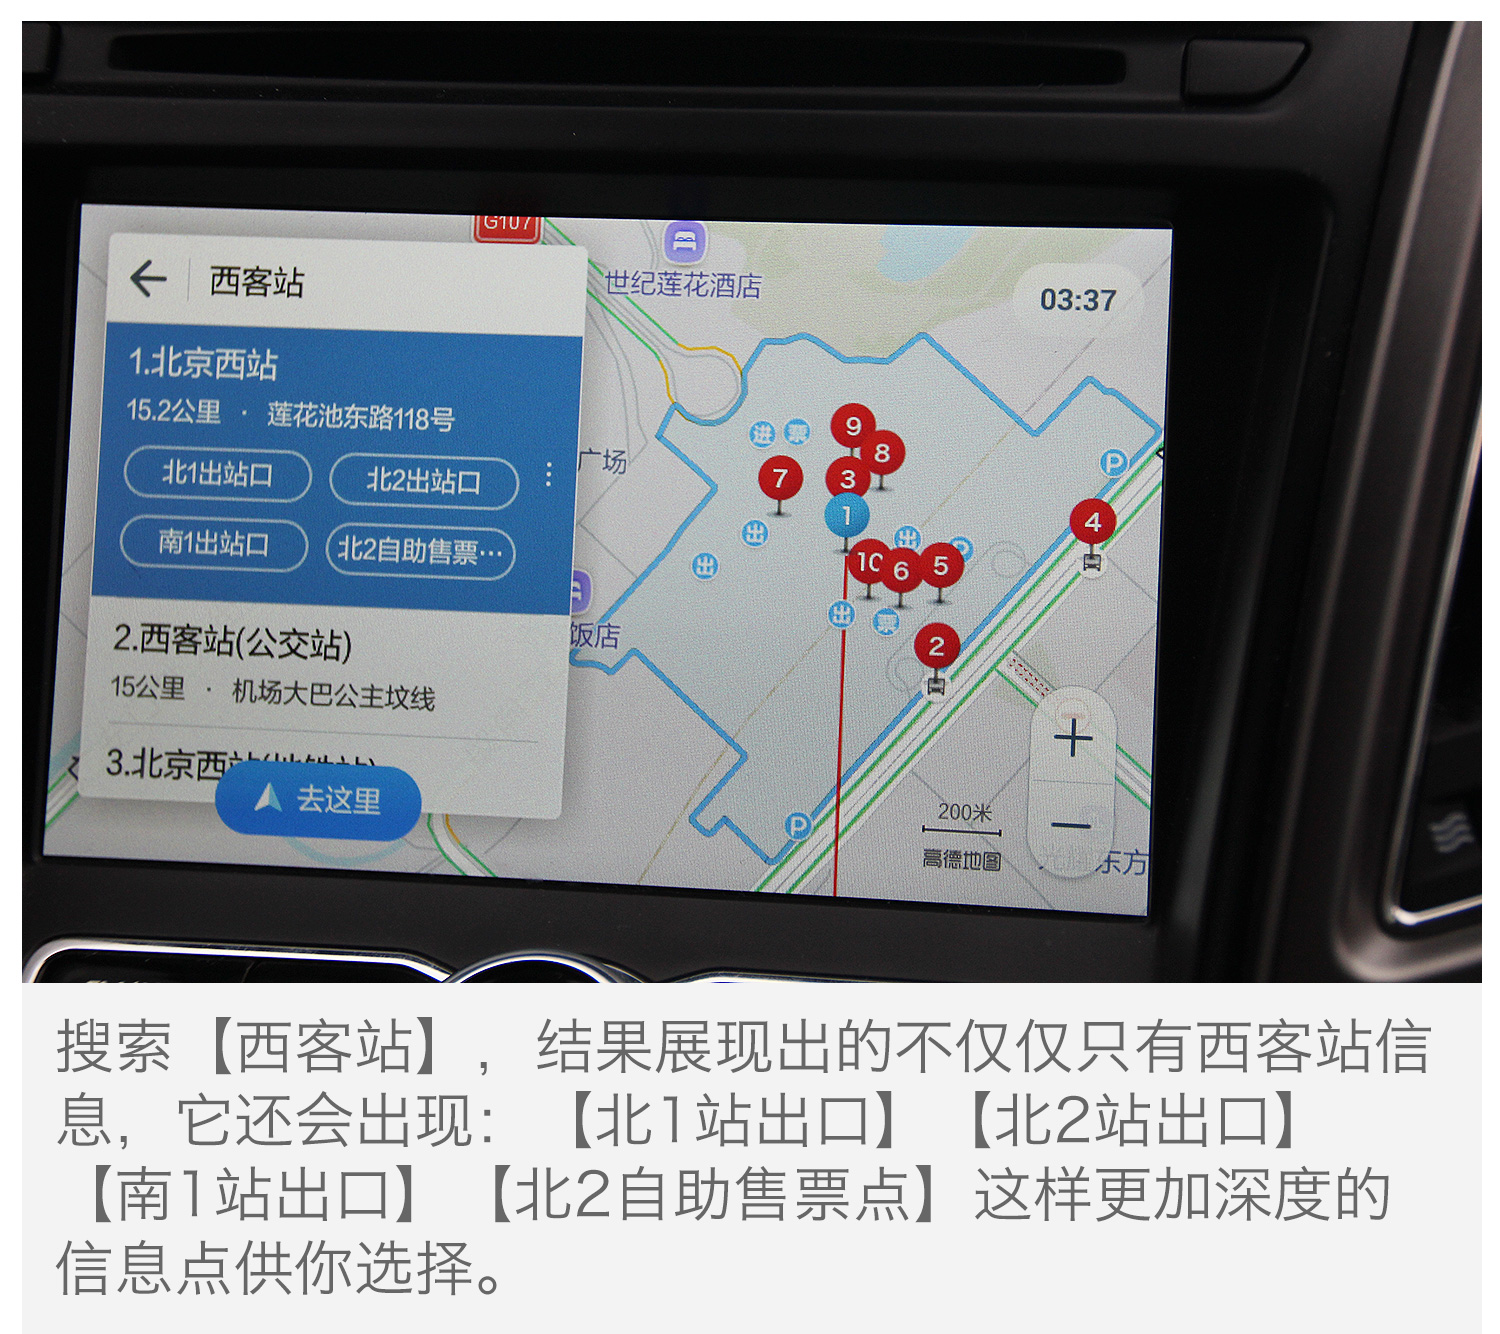 长安CS95新导航曝光 体验高德地图车机版2.0